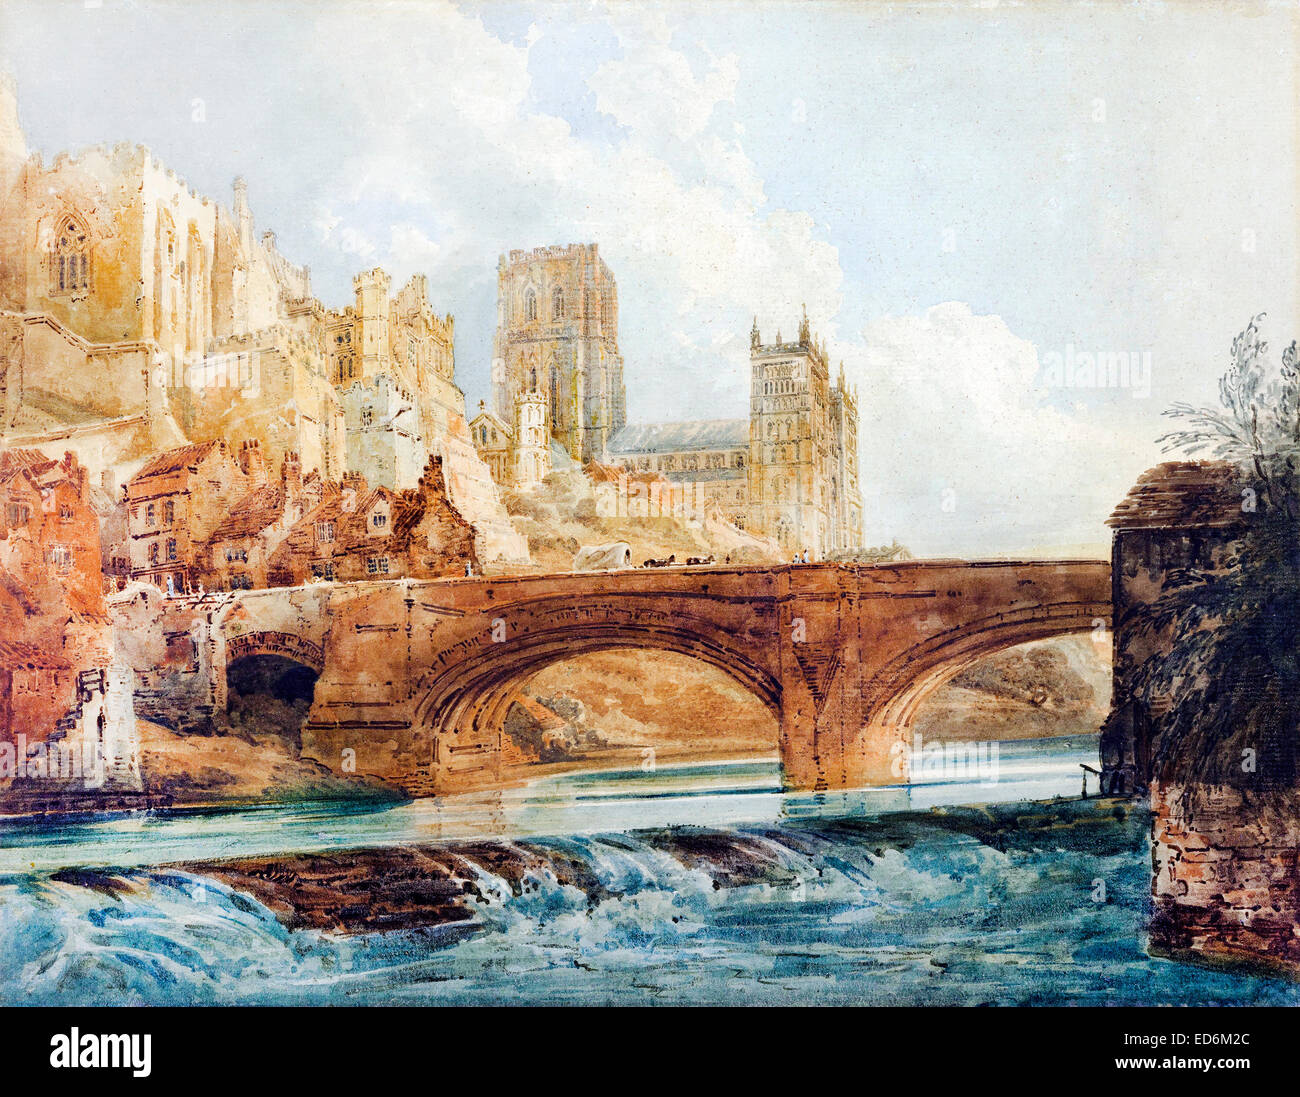 Thomas Girtin, Cathédrale de Durham et le château. Vers 1800. L'aquarelle. J. Paul Getty Museum, Los Angeles, USA. Banque D'Images